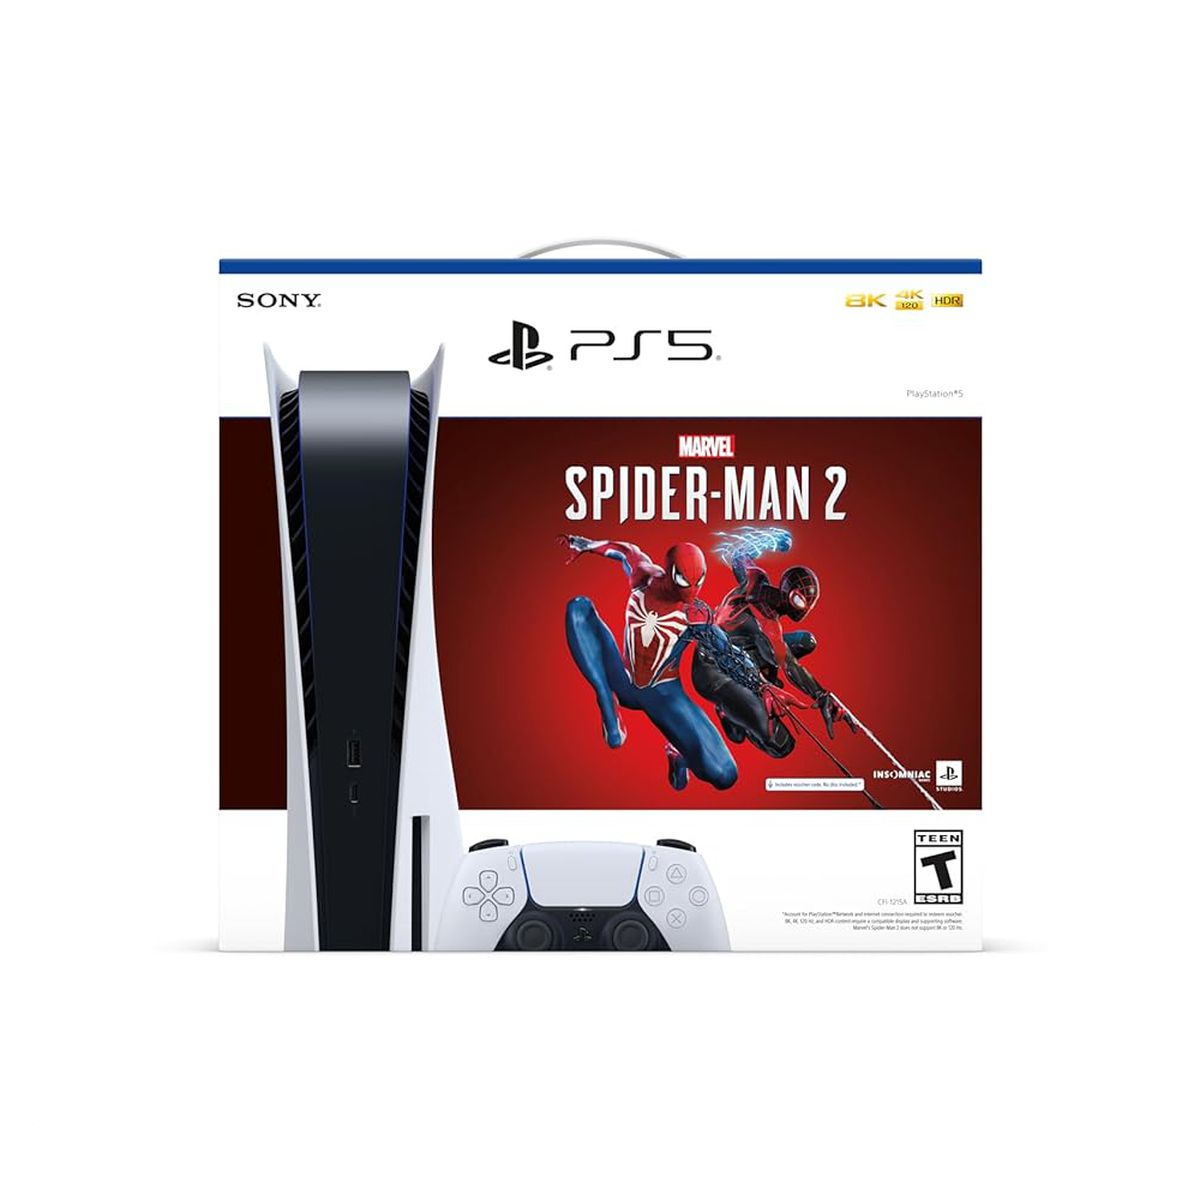 PS5 Slim Disc Console Spiderman 2 Bundle